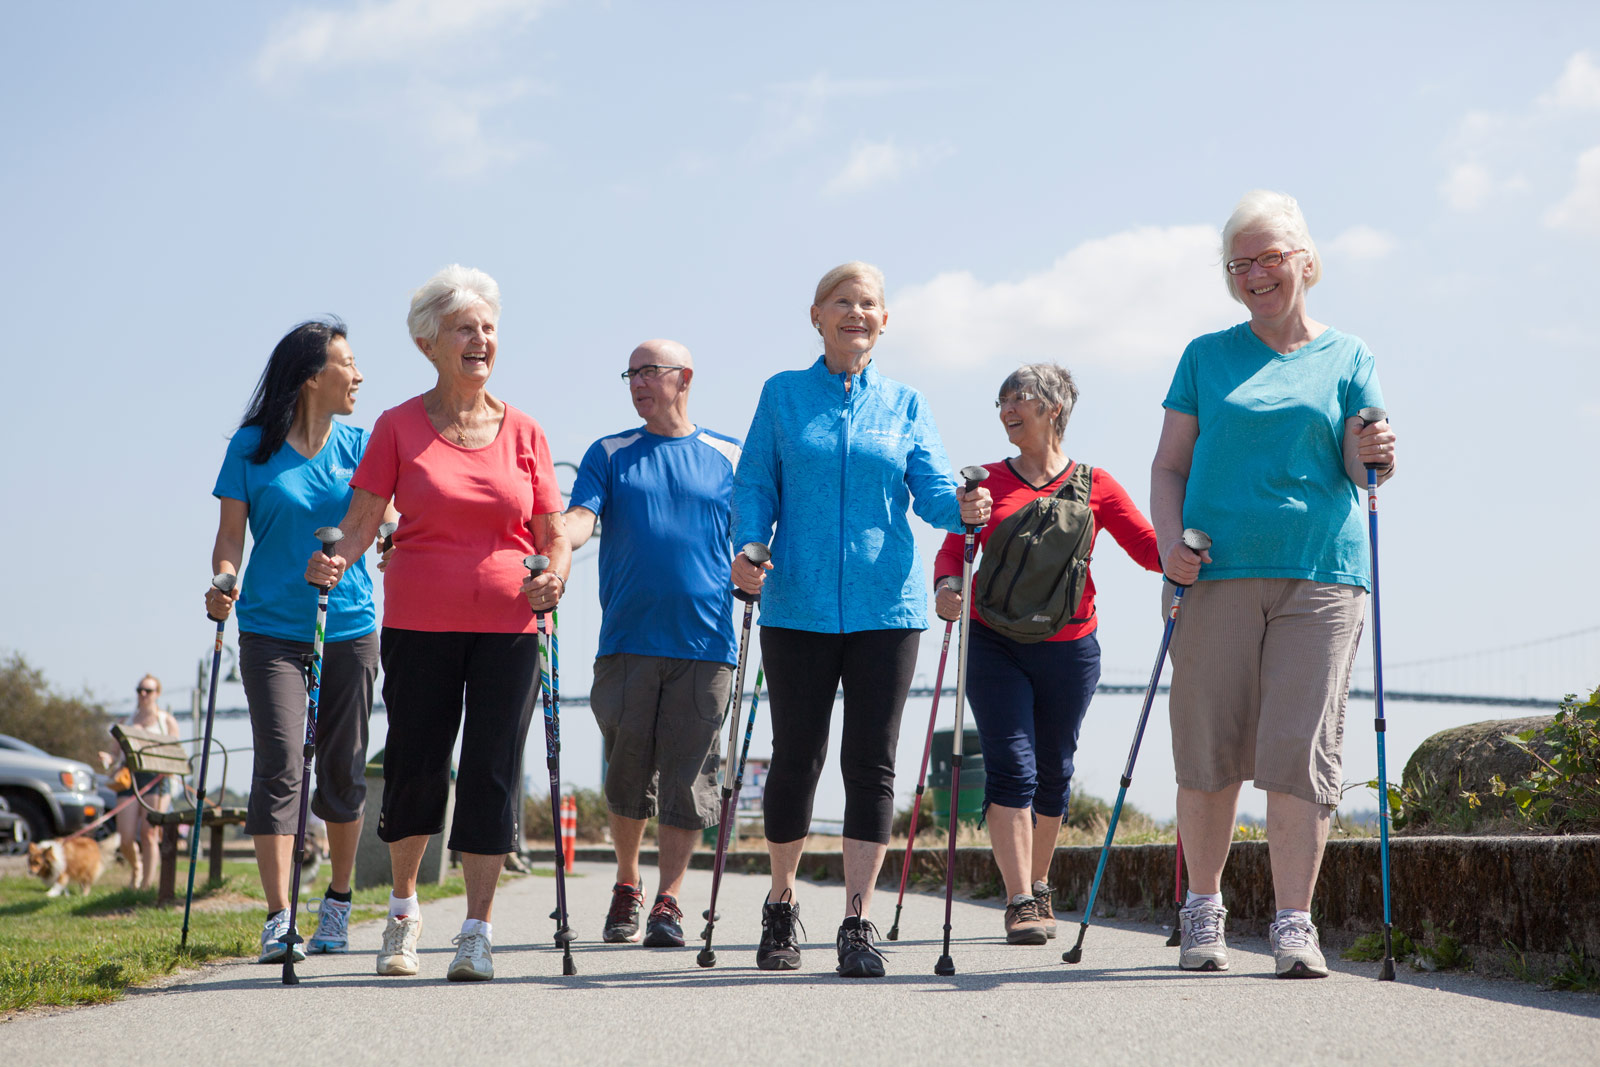 Wpływ treningu nordic walking na jakość życia, równowagę i mobilność funkcjonalną u osób starszych: Randomizowane badanie kliniczne